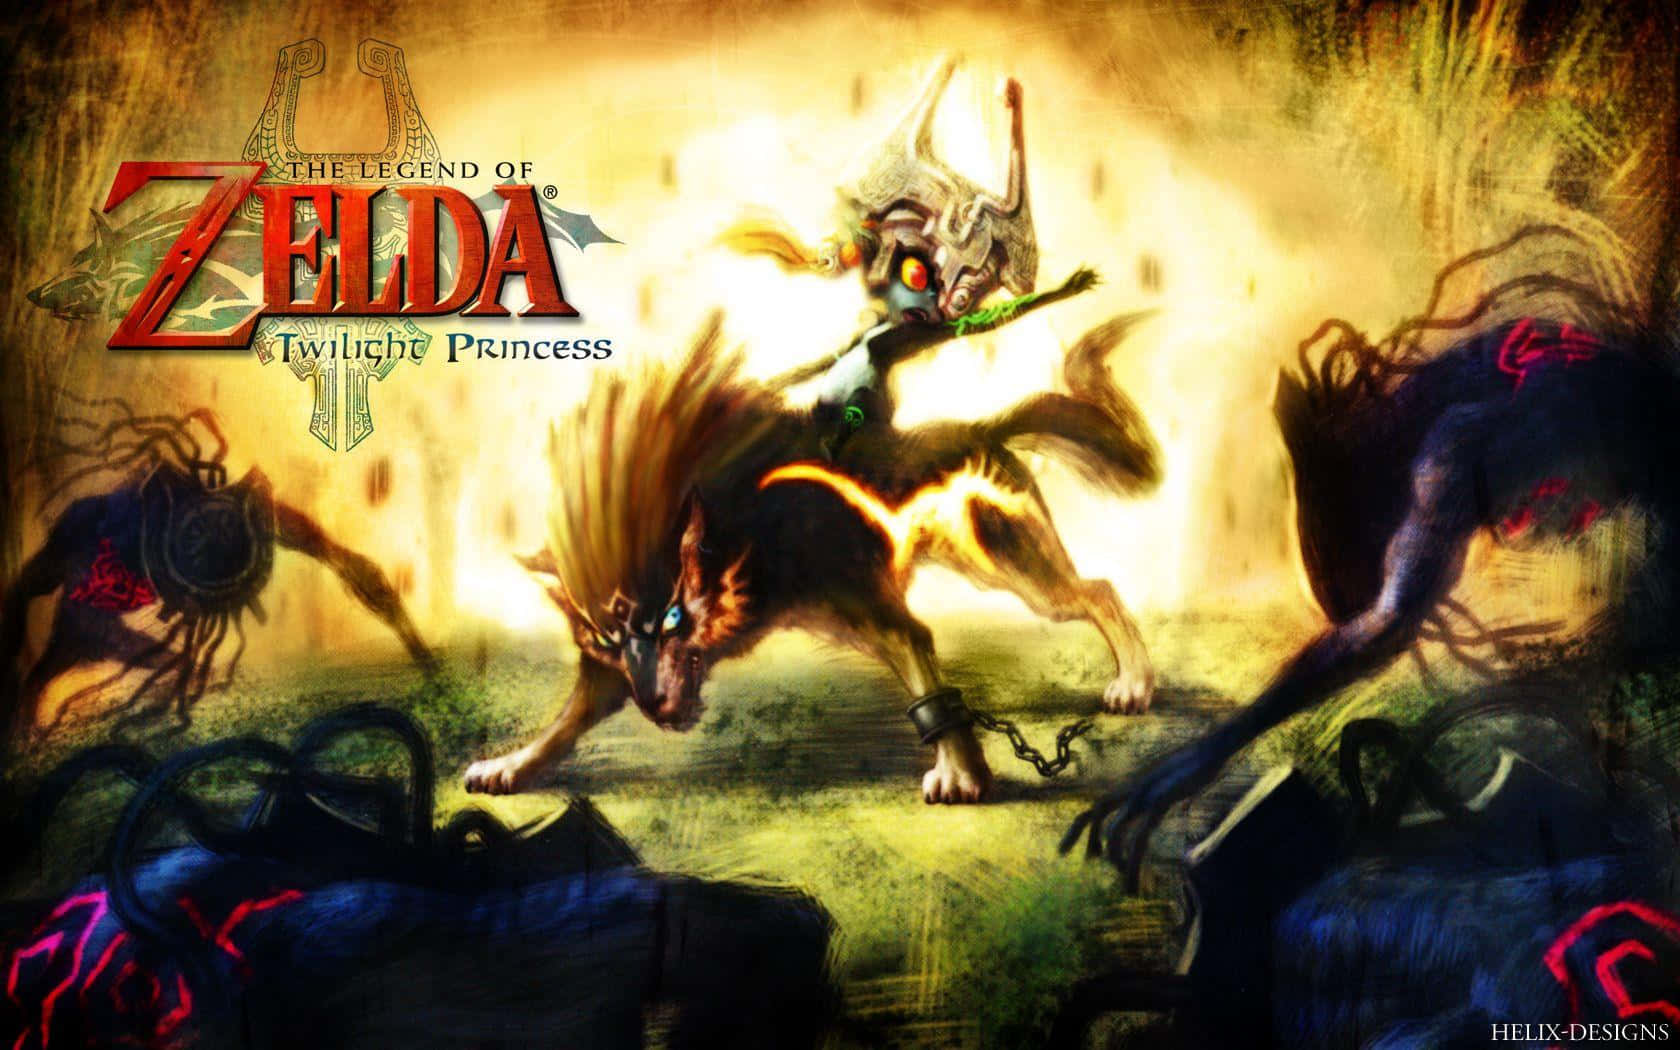 Epic Eventyret Venter I Legender Af Zelda Twilight Princess Hd Wallpaper Wallpaper